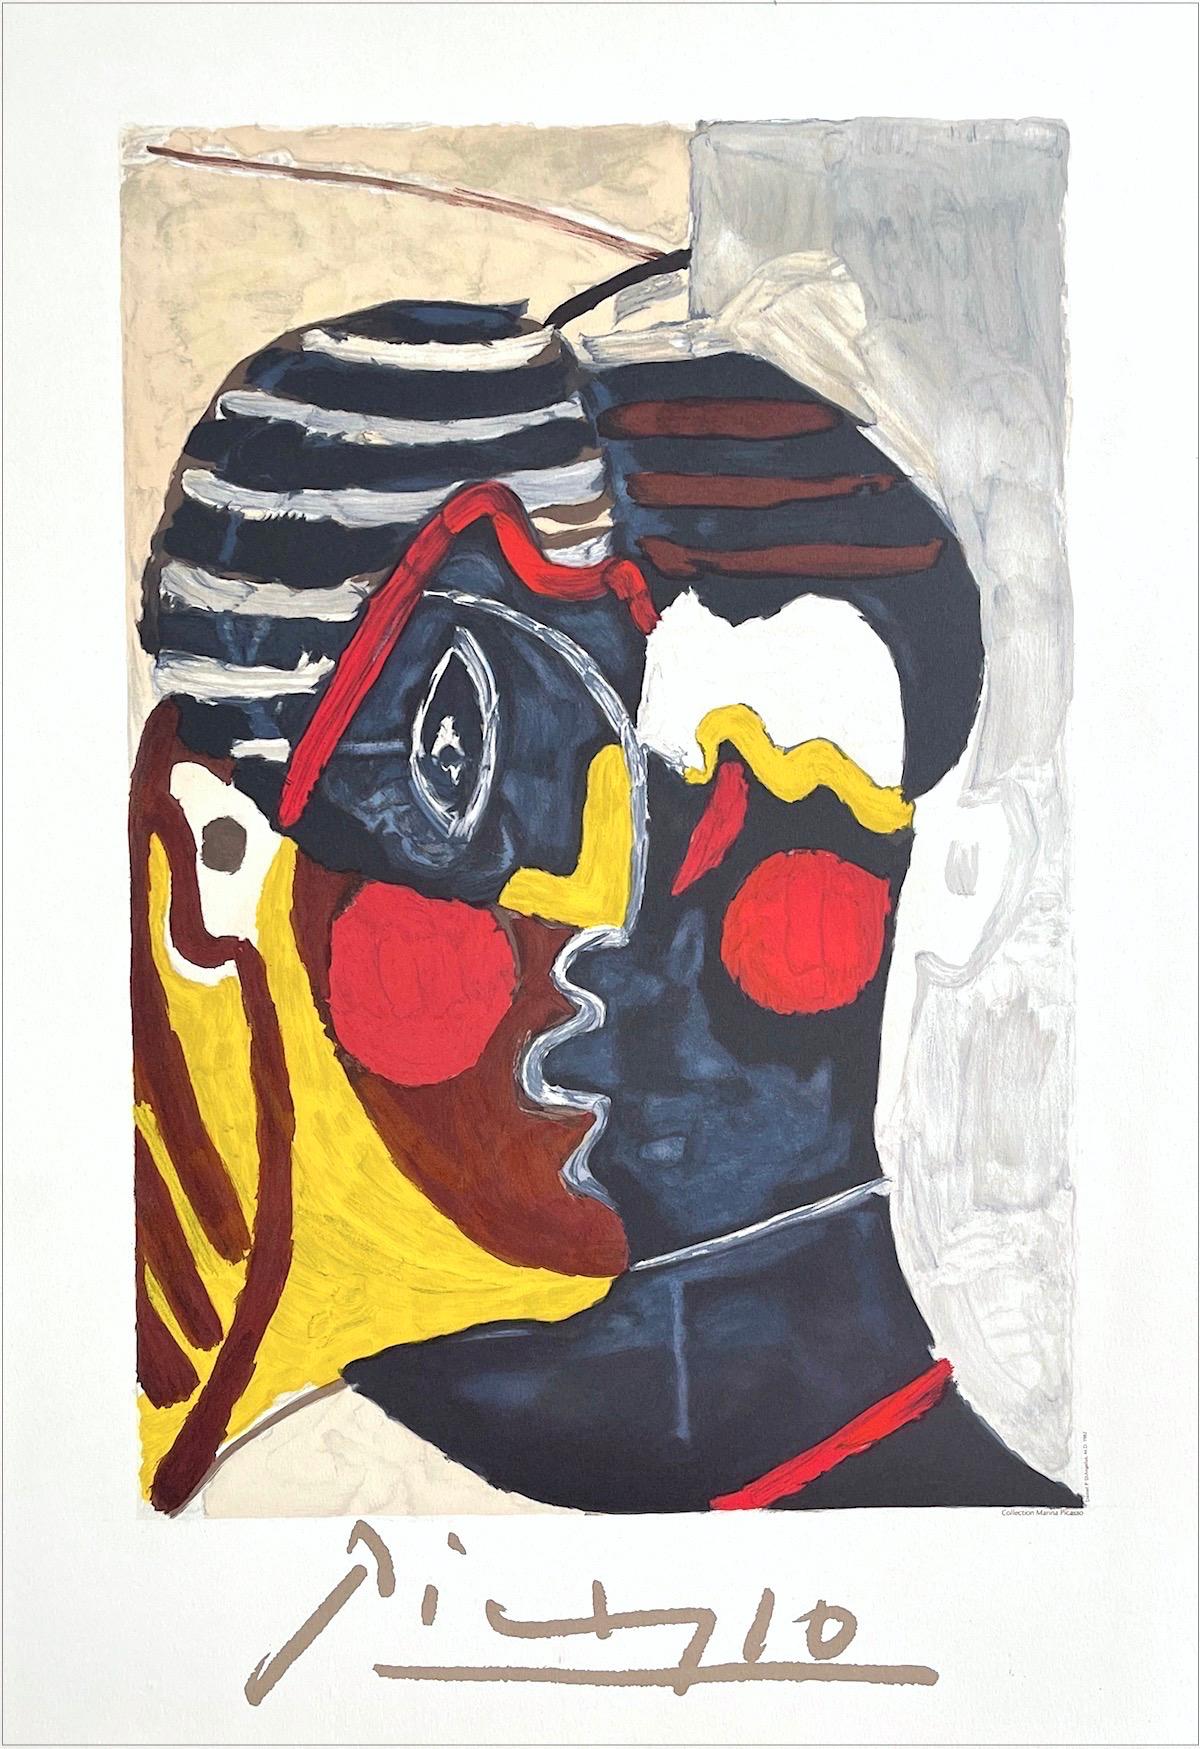 Paulo en Costume d''Arlekin, Lithographie, Abstrakte Gesichter, afrikanische Maske, Streifen